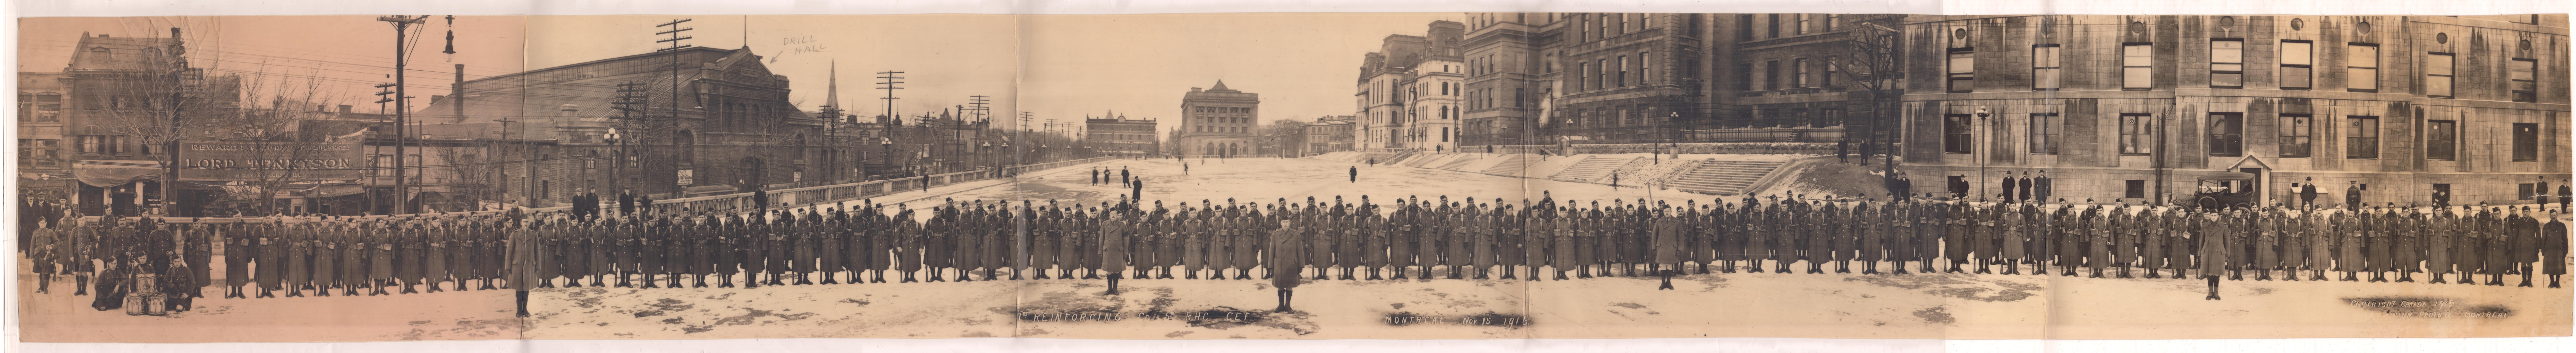 Le régiment du Black Watch sur le Champ-de-Mars à Montréal, la veille de son départ pour l’Europe en 1916.